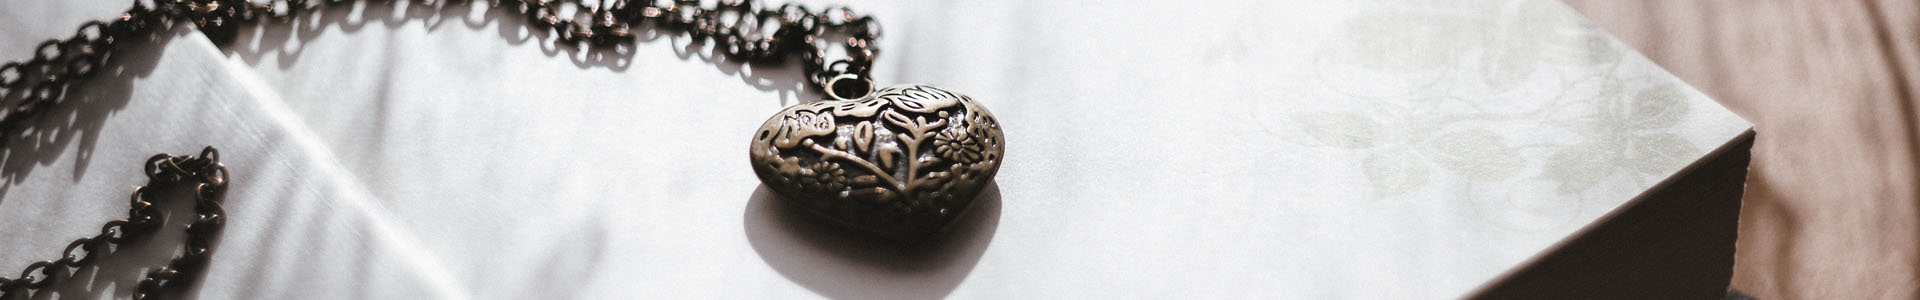 Heart pendant on an open book.